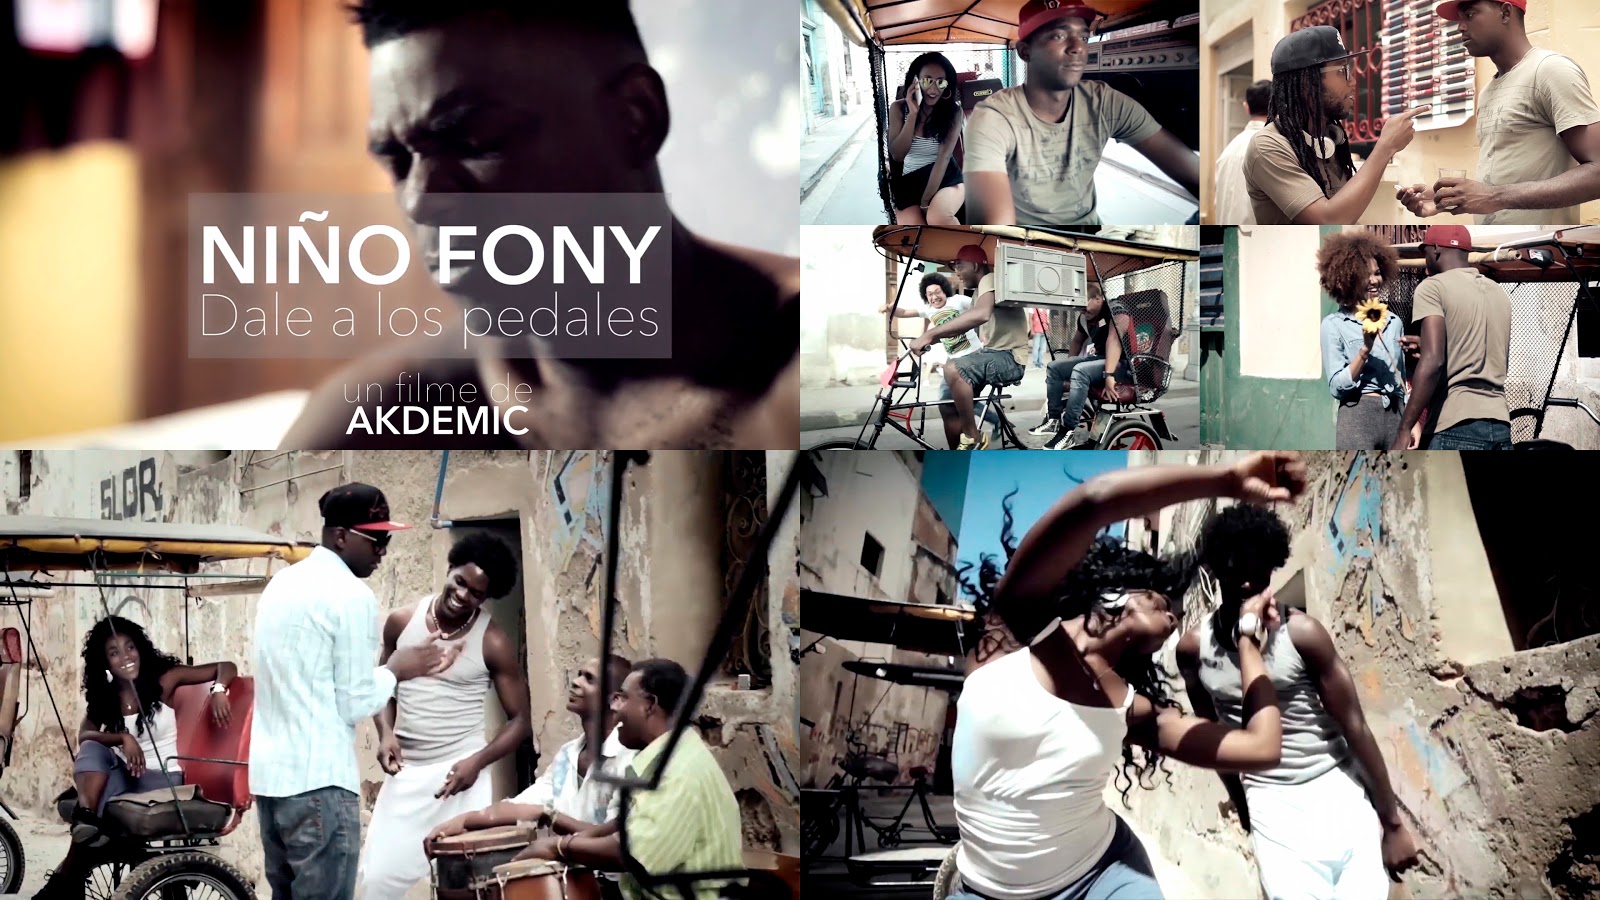 Niño Fony - ¨Dale a los pedales¨ - Videoclip - Dirección: Akdemic. Portal del Vídeo Clip Cubano